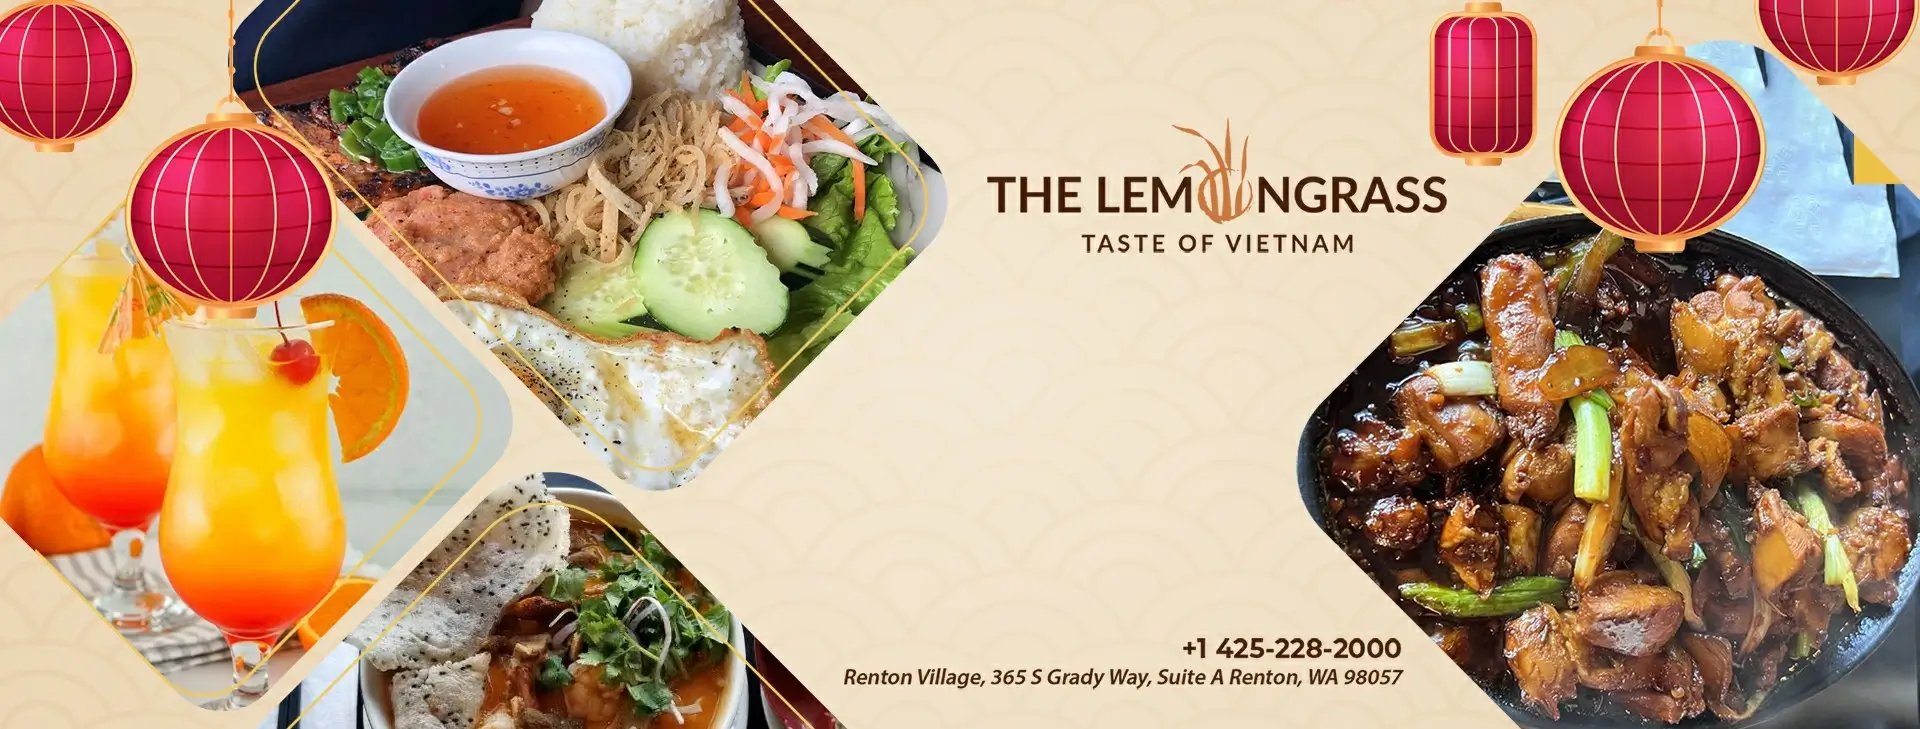 Lemon Grass – Taste Of Vietnam